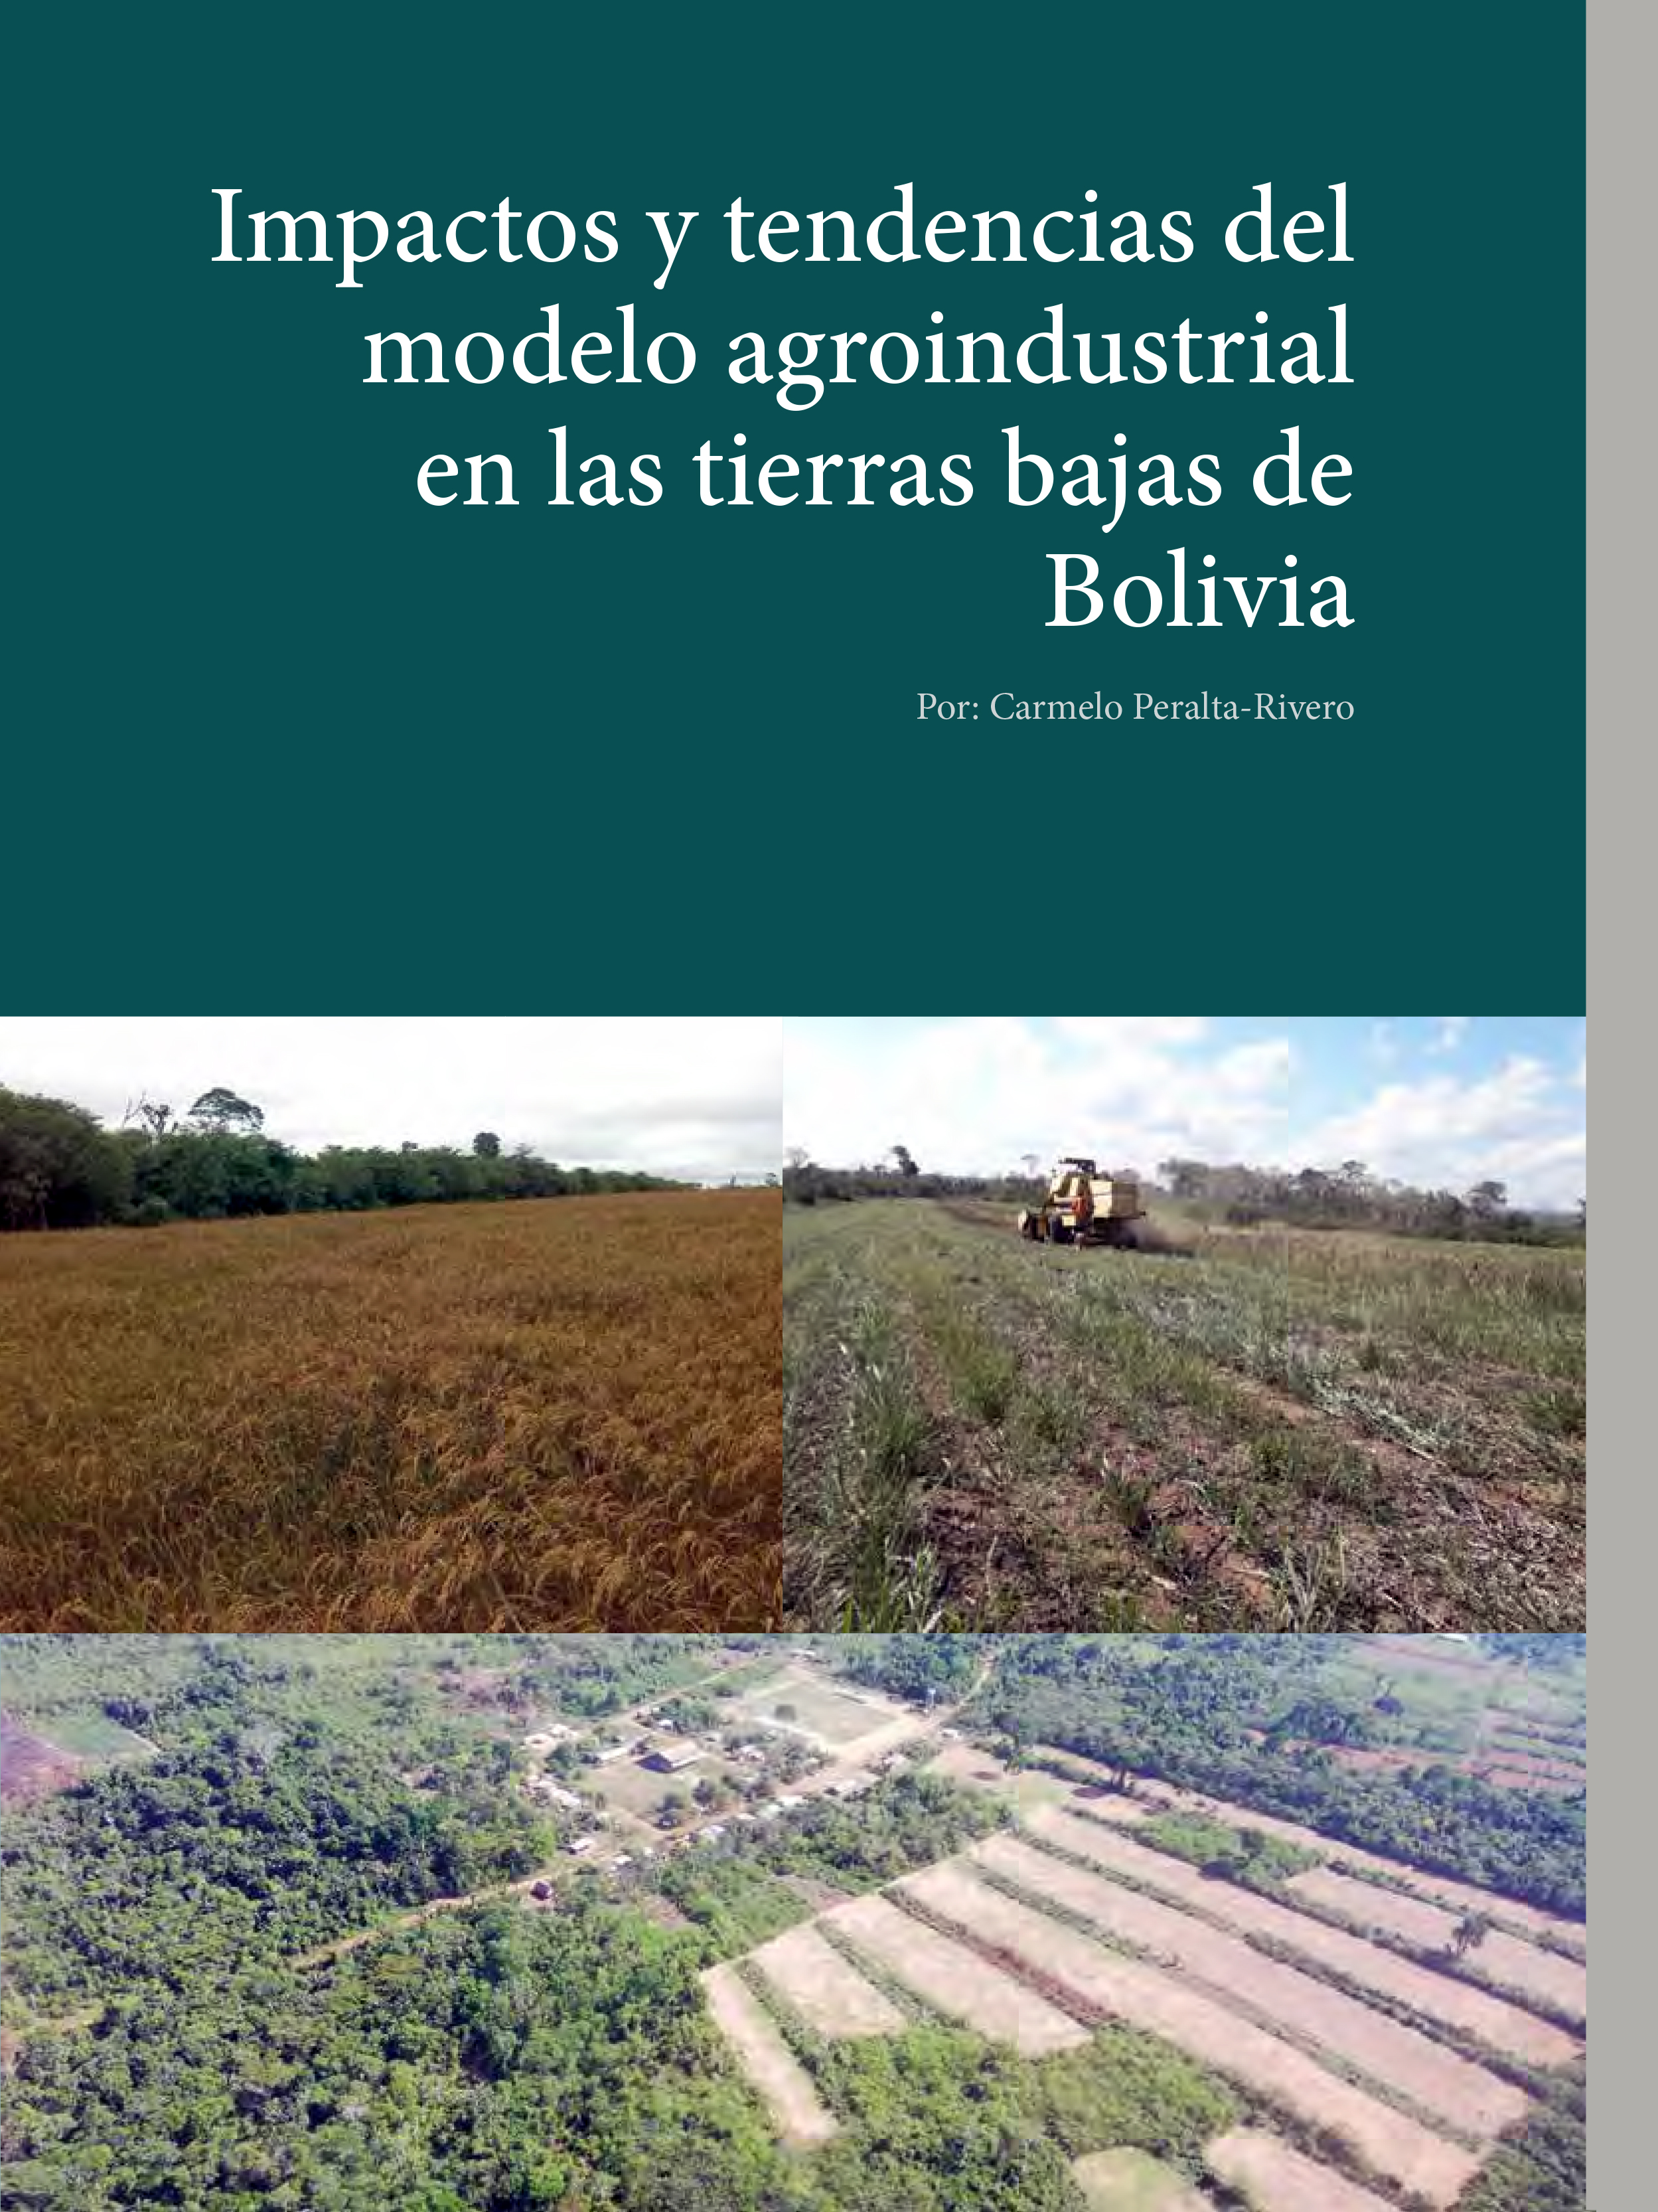 Impactos y tendendias del modelo agroindustrial en tierras bajas de Bolivia  | CIPCA - Centro de Investigación y Promoción del Campesinado